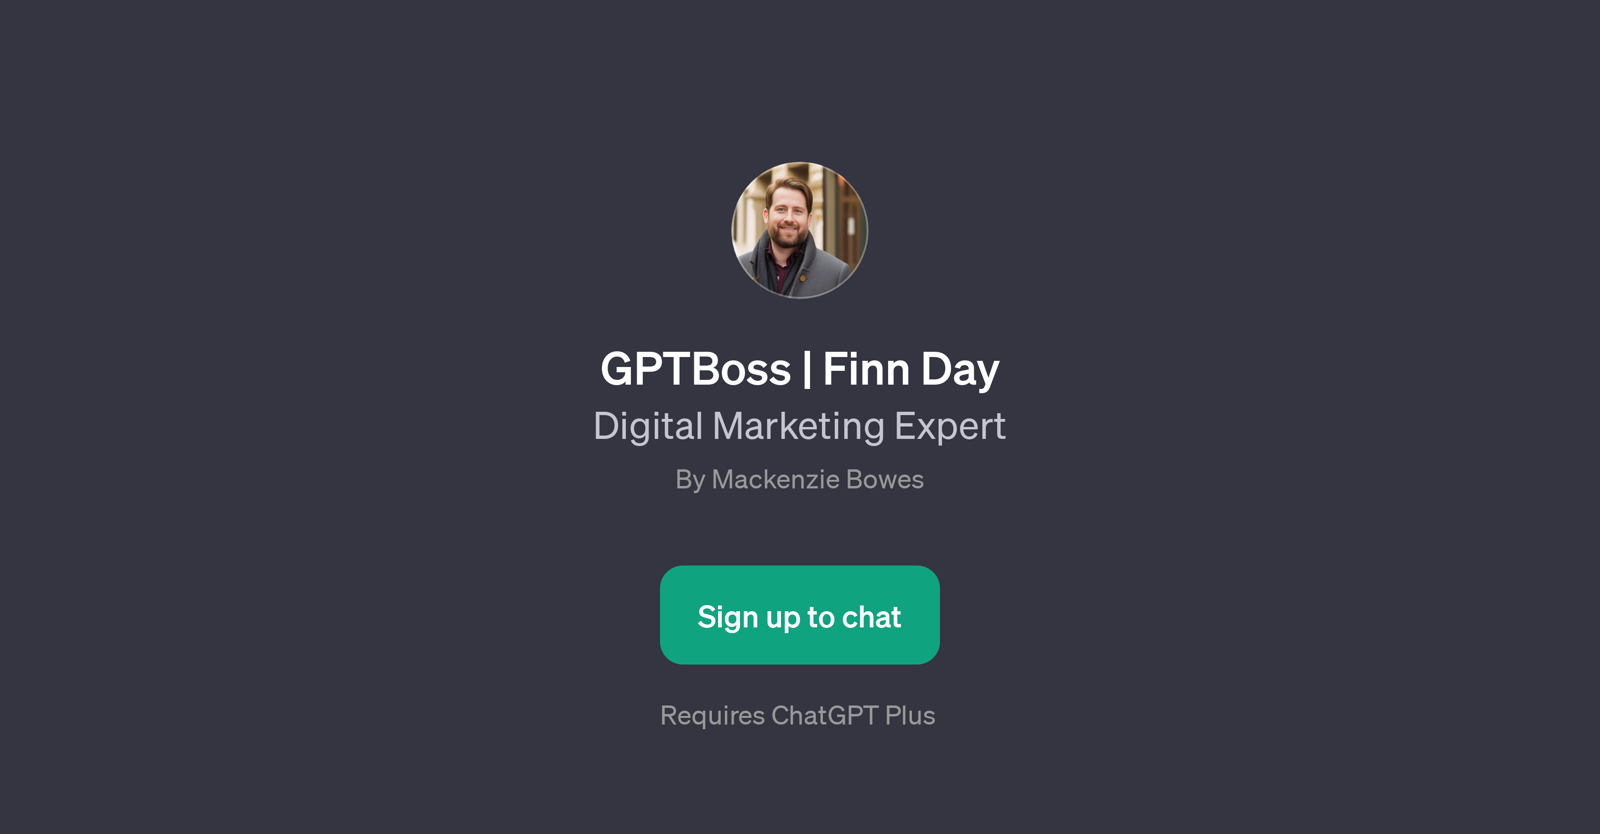 GPTBoss | Finn Day website